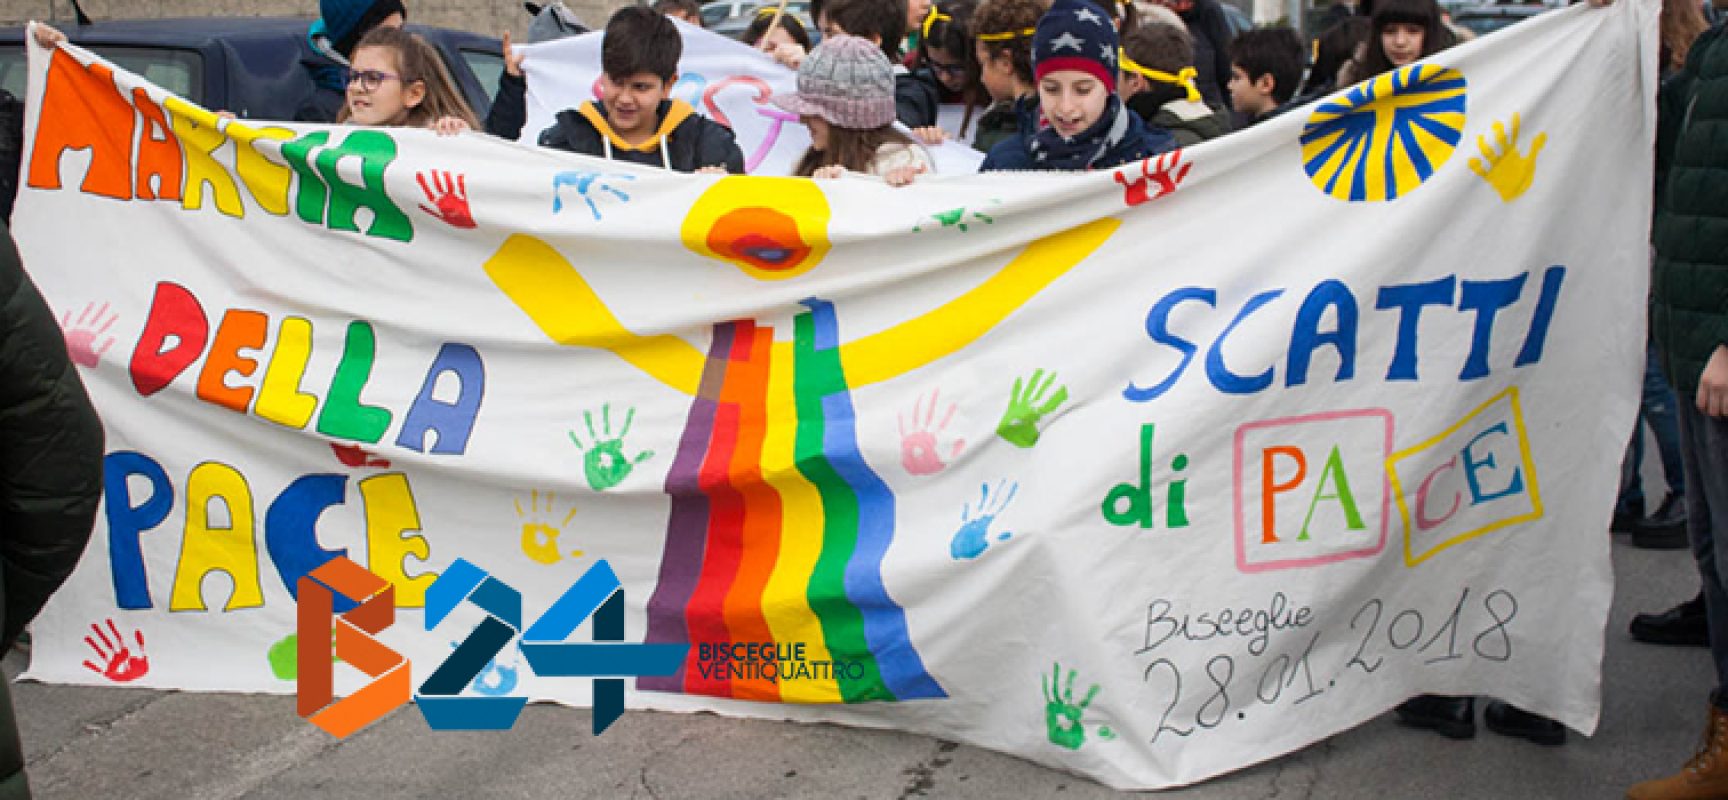 La Marcia della Pace colora di vivacità ed umanità le strade di Bisceglie / FOTO